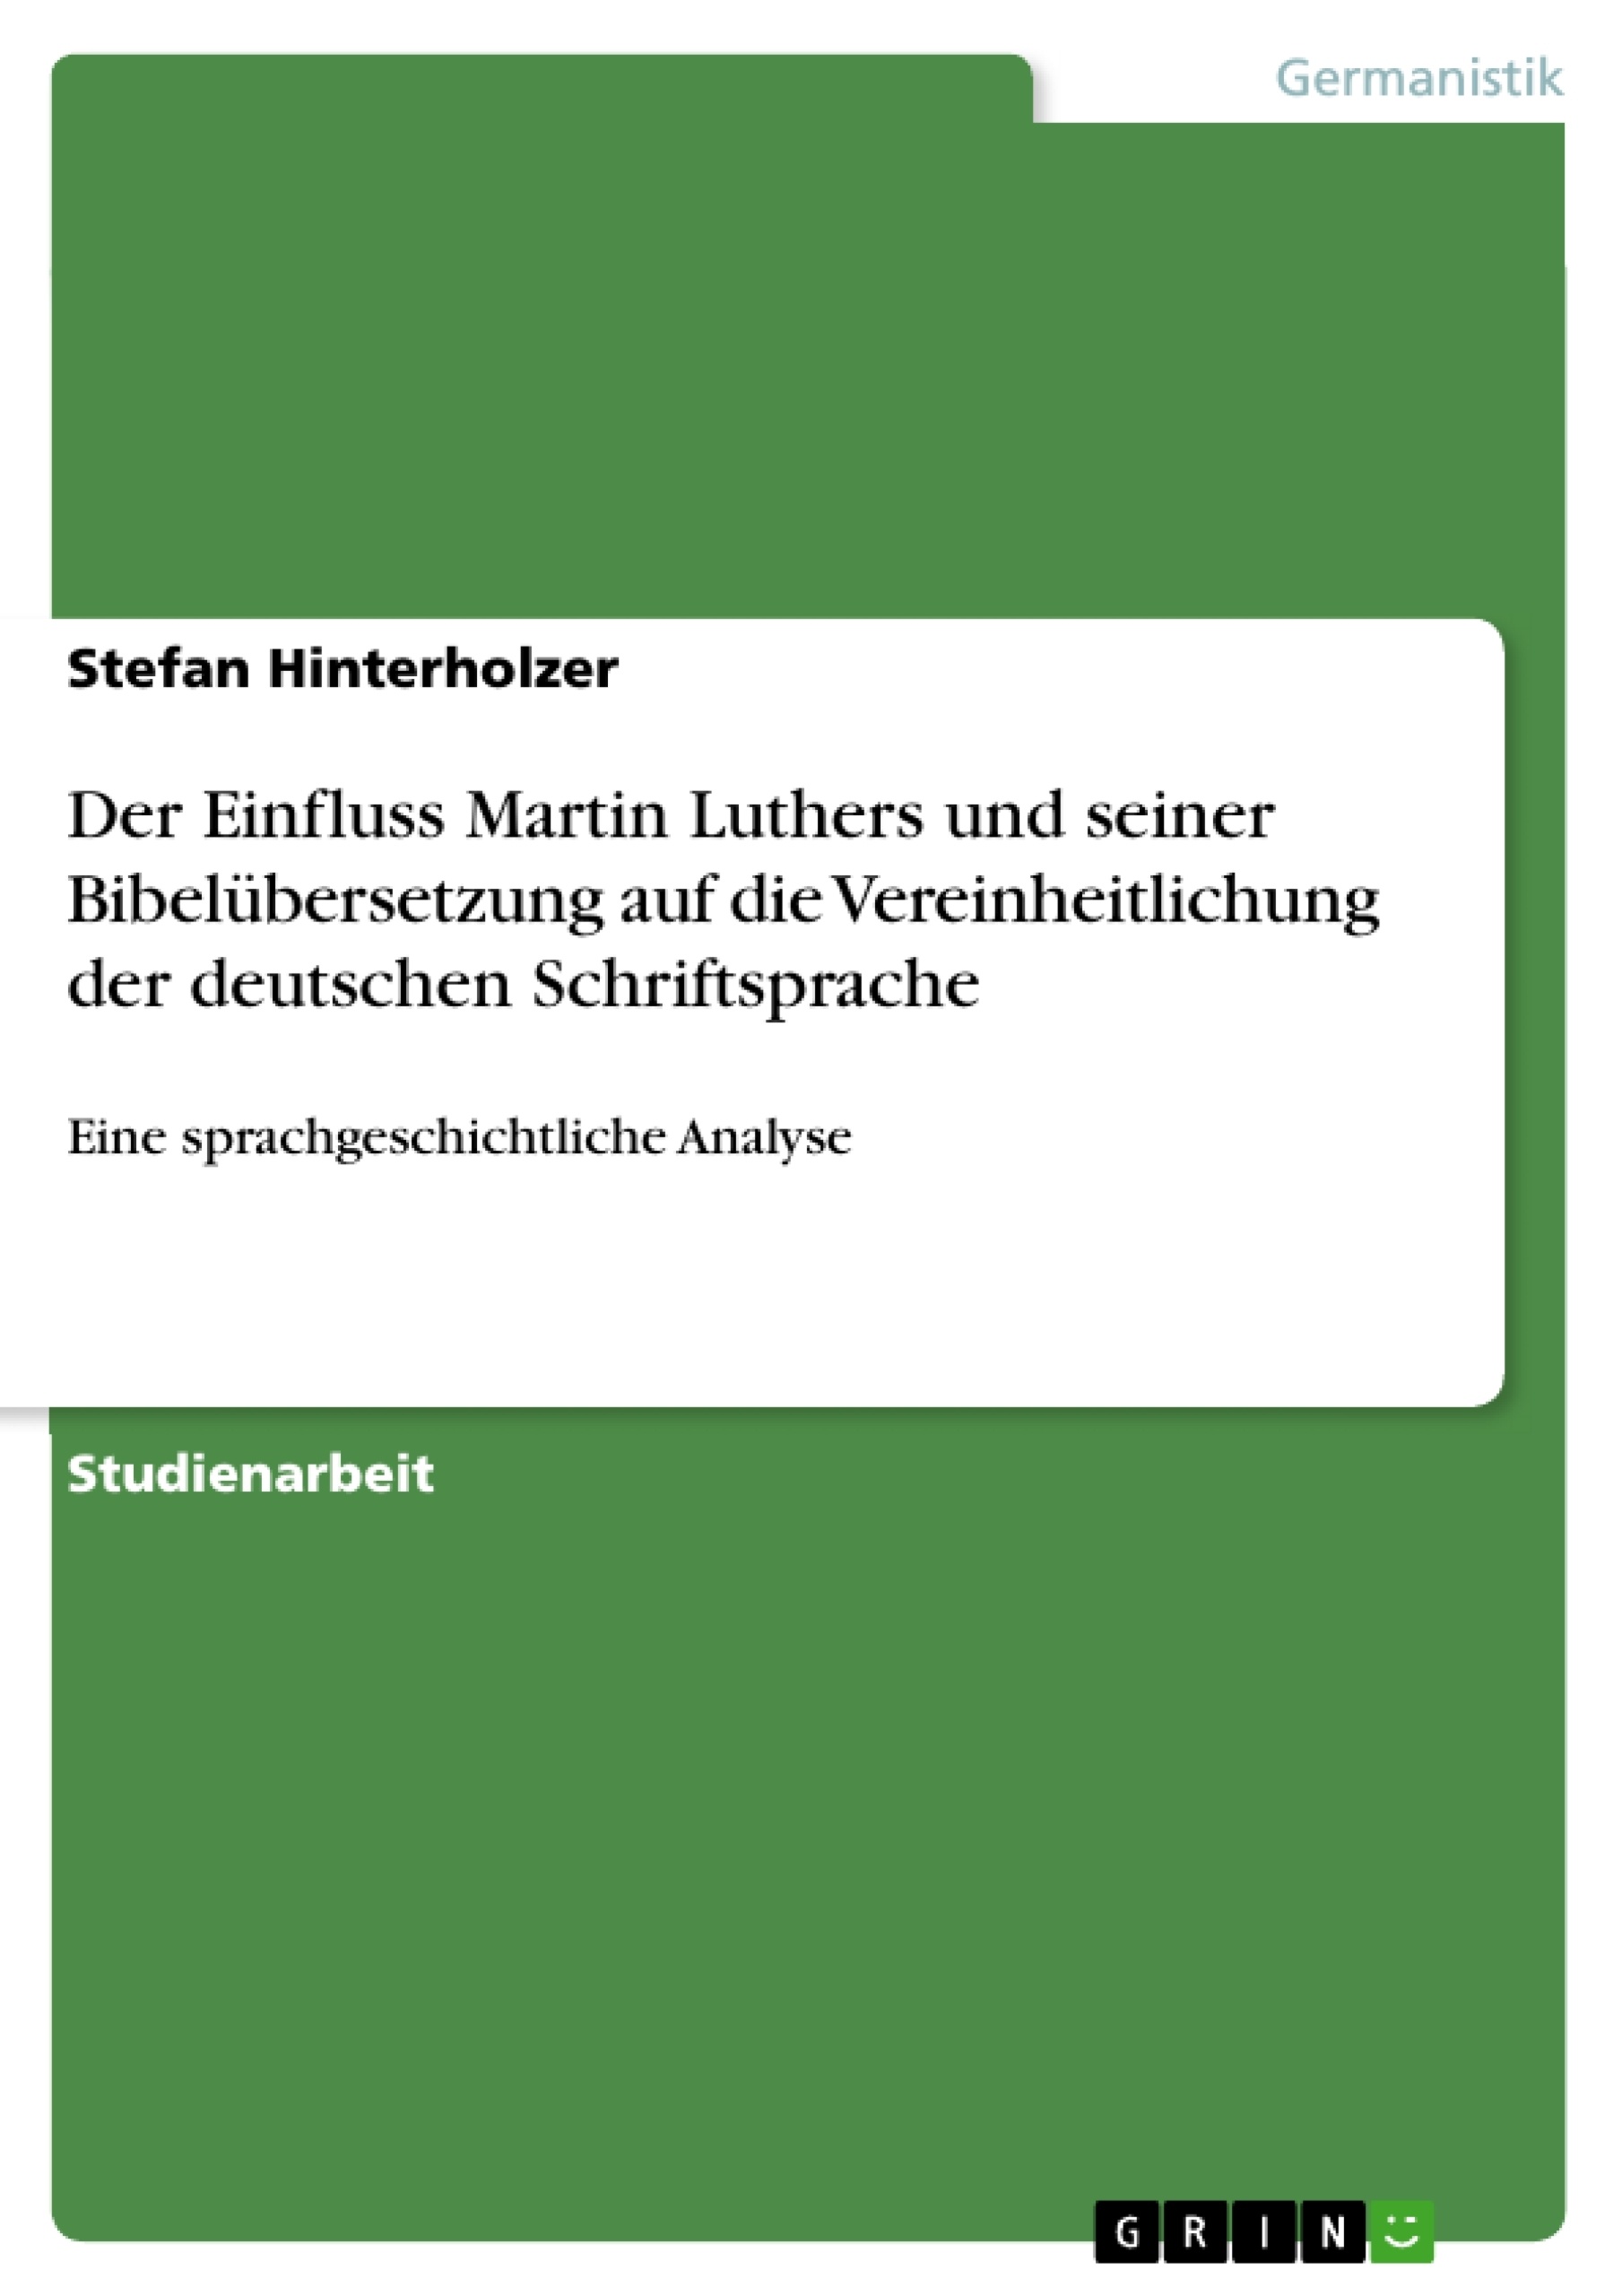 Title: Der Einfluss Martin Luthers und seiner Bibelübersetzung auf die Vereinheitlichung der deutschen Schriftsprache